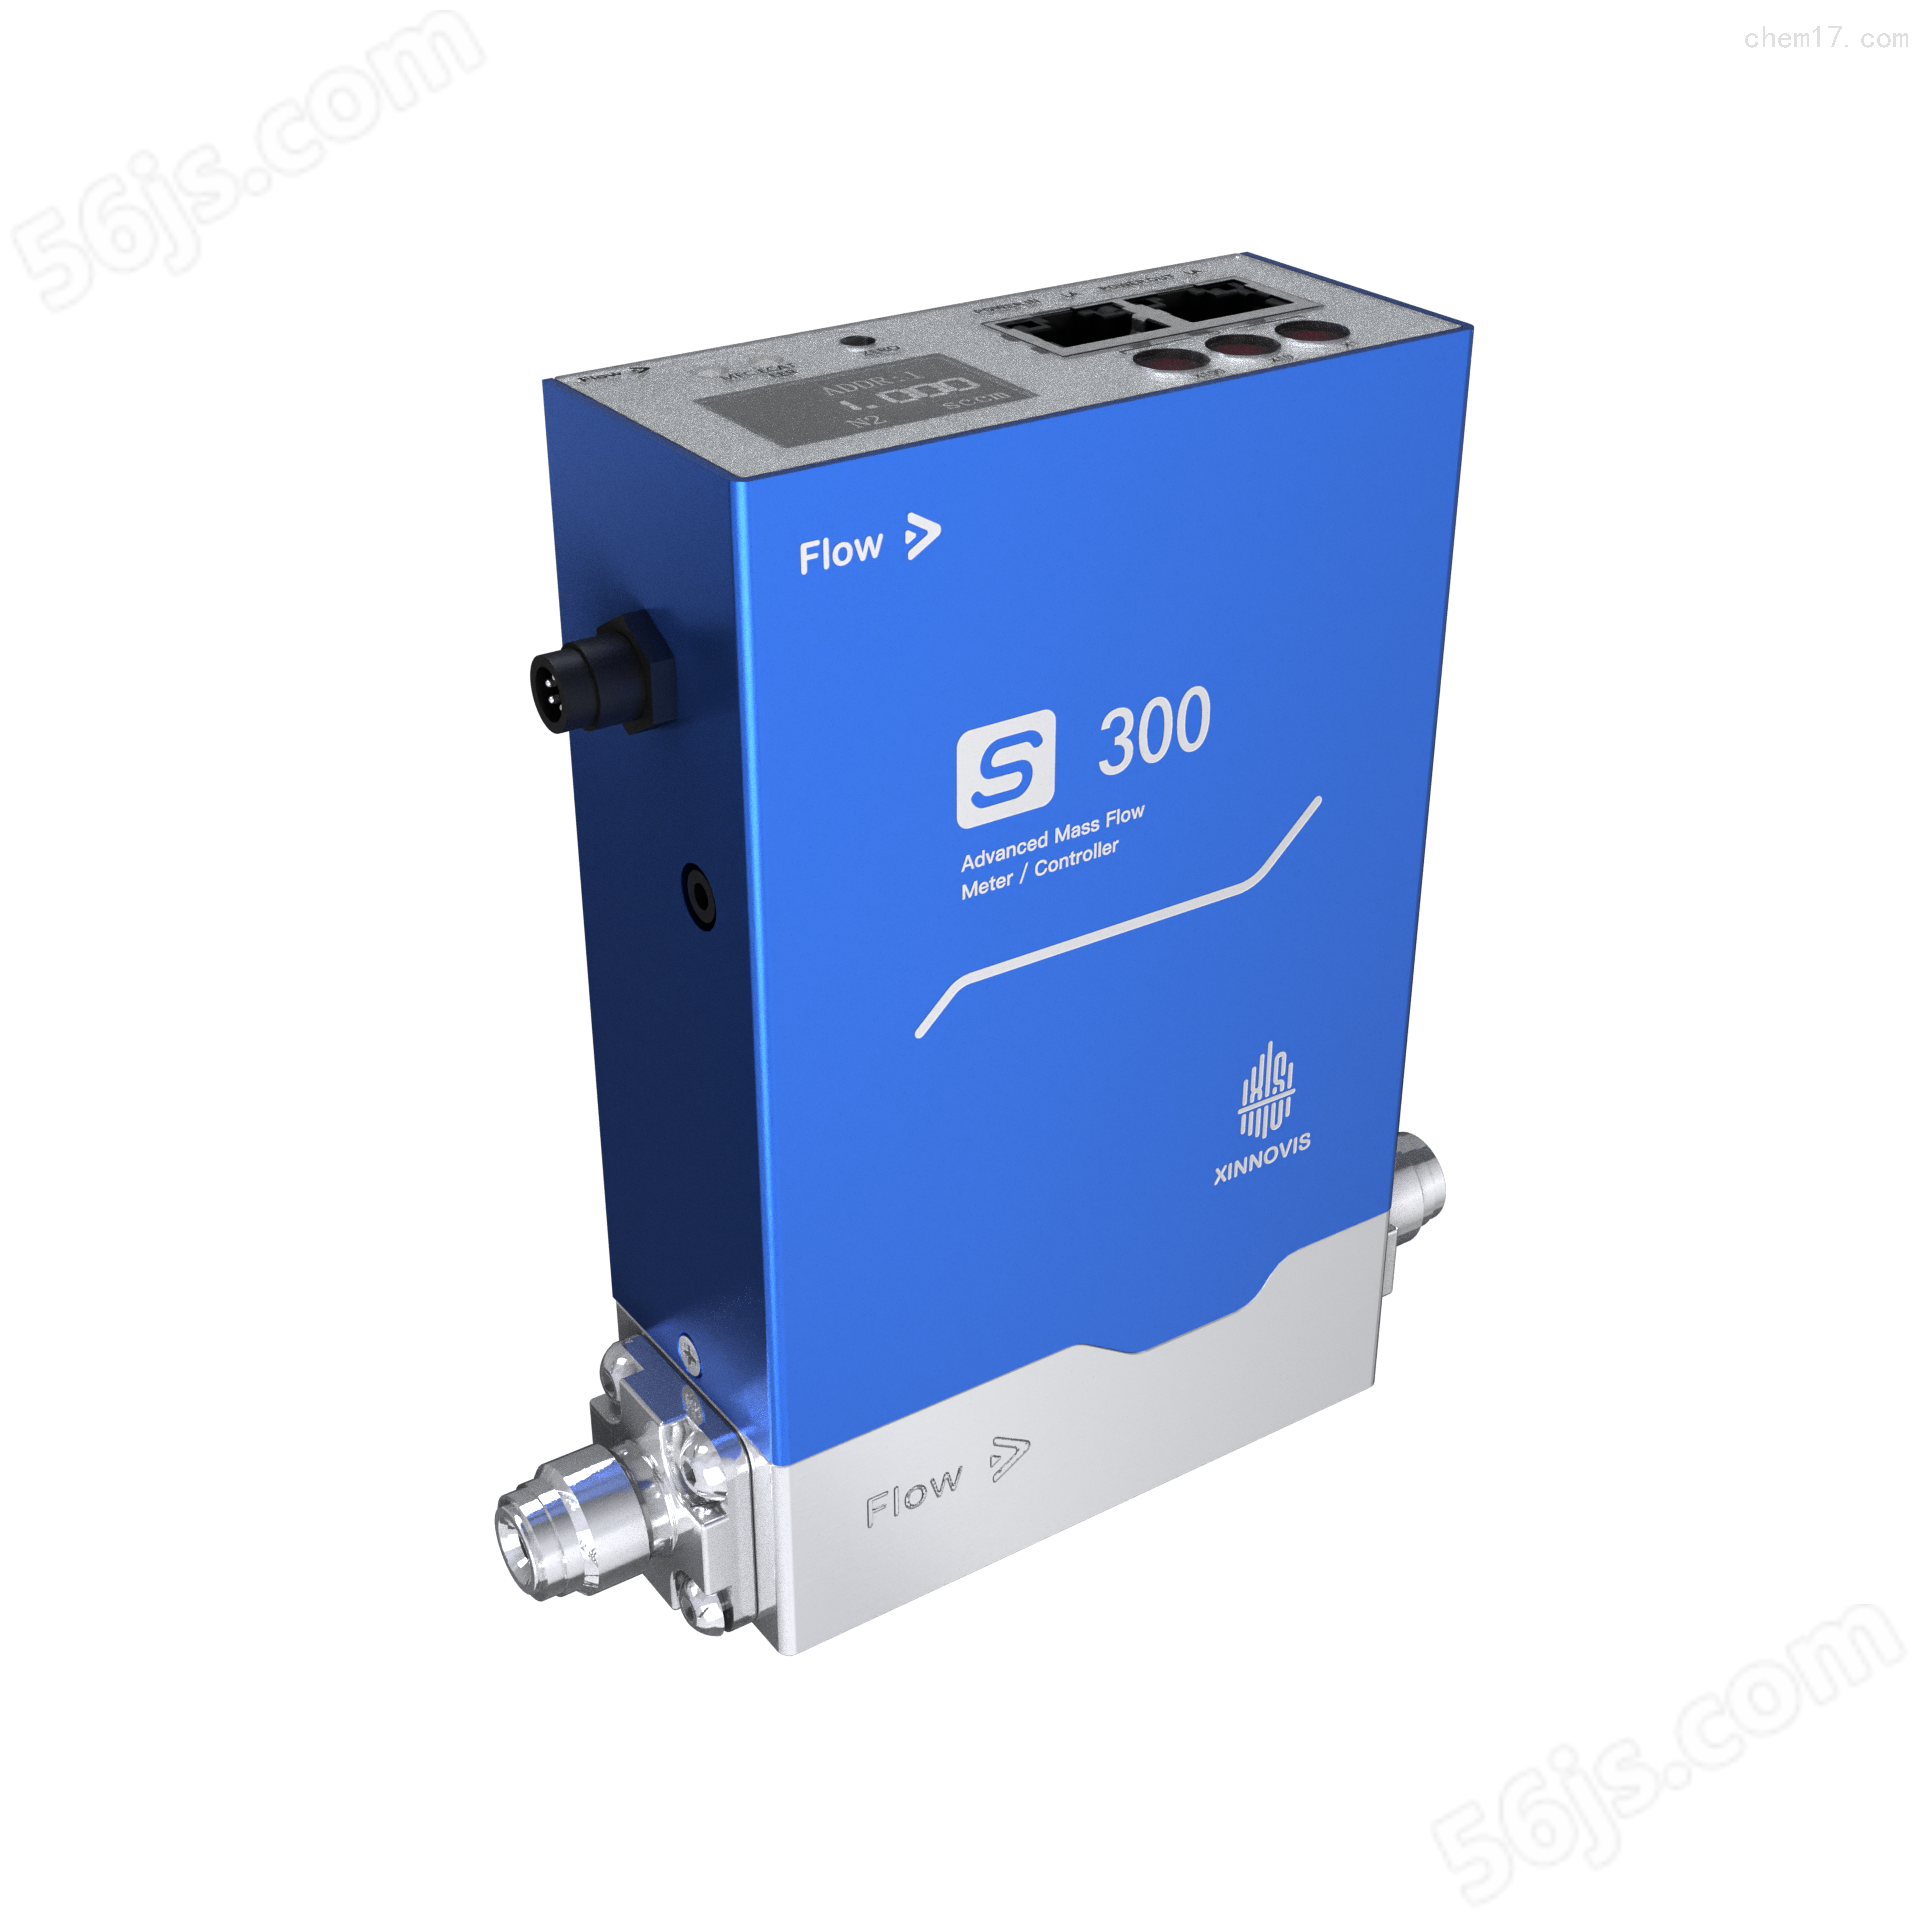 供应气体质量流量控制器s-300报价